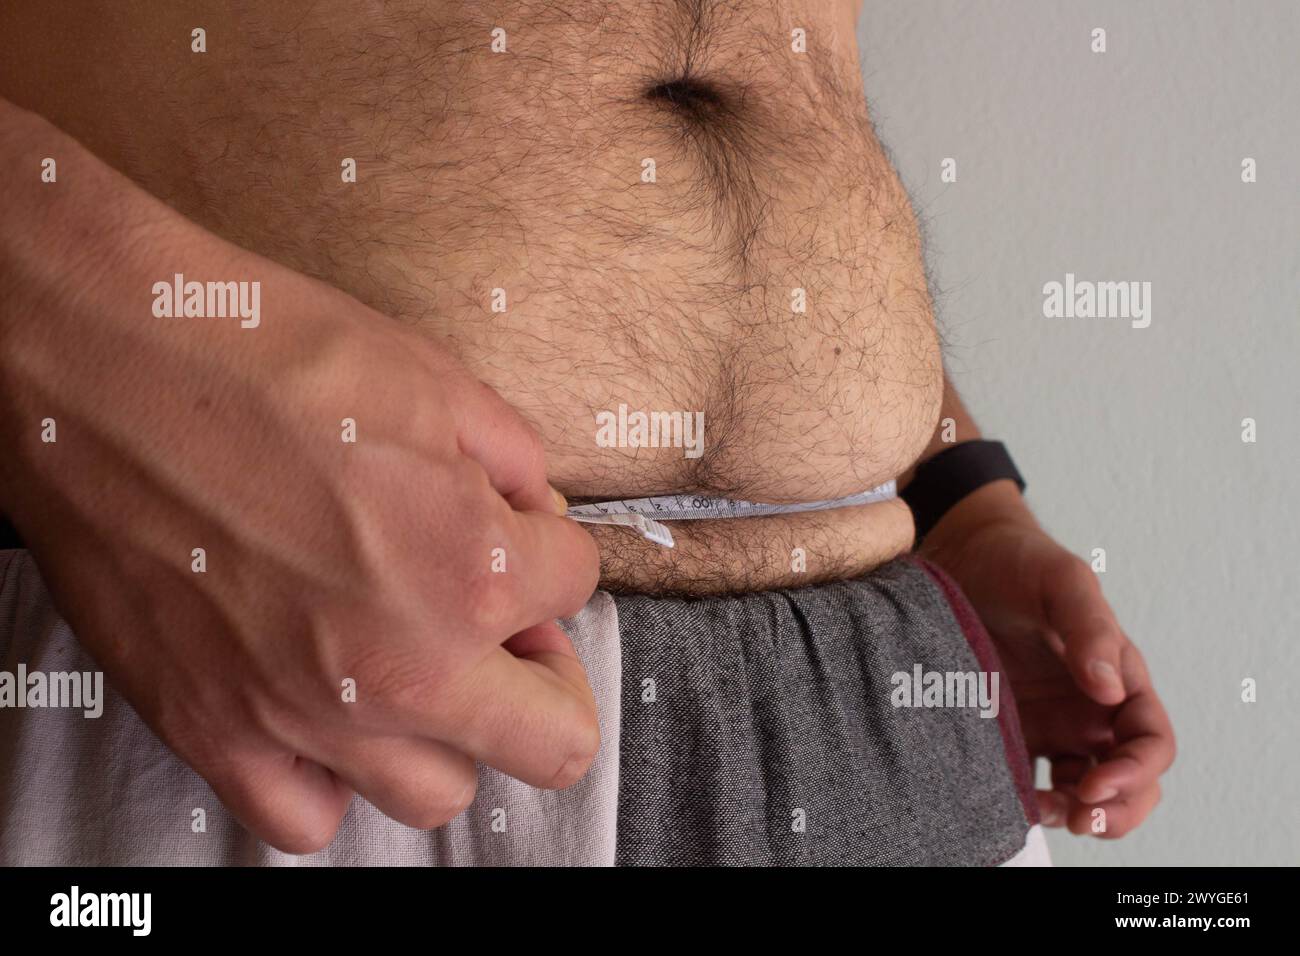 Erleben Sie die Reise eines übergewichtigen Mannes, der sich um seine Gesundheit kümmert und seine Taille mit Entschlossenheit zwischen sichtbaren Dehnungsstreifen misst Stockfoto